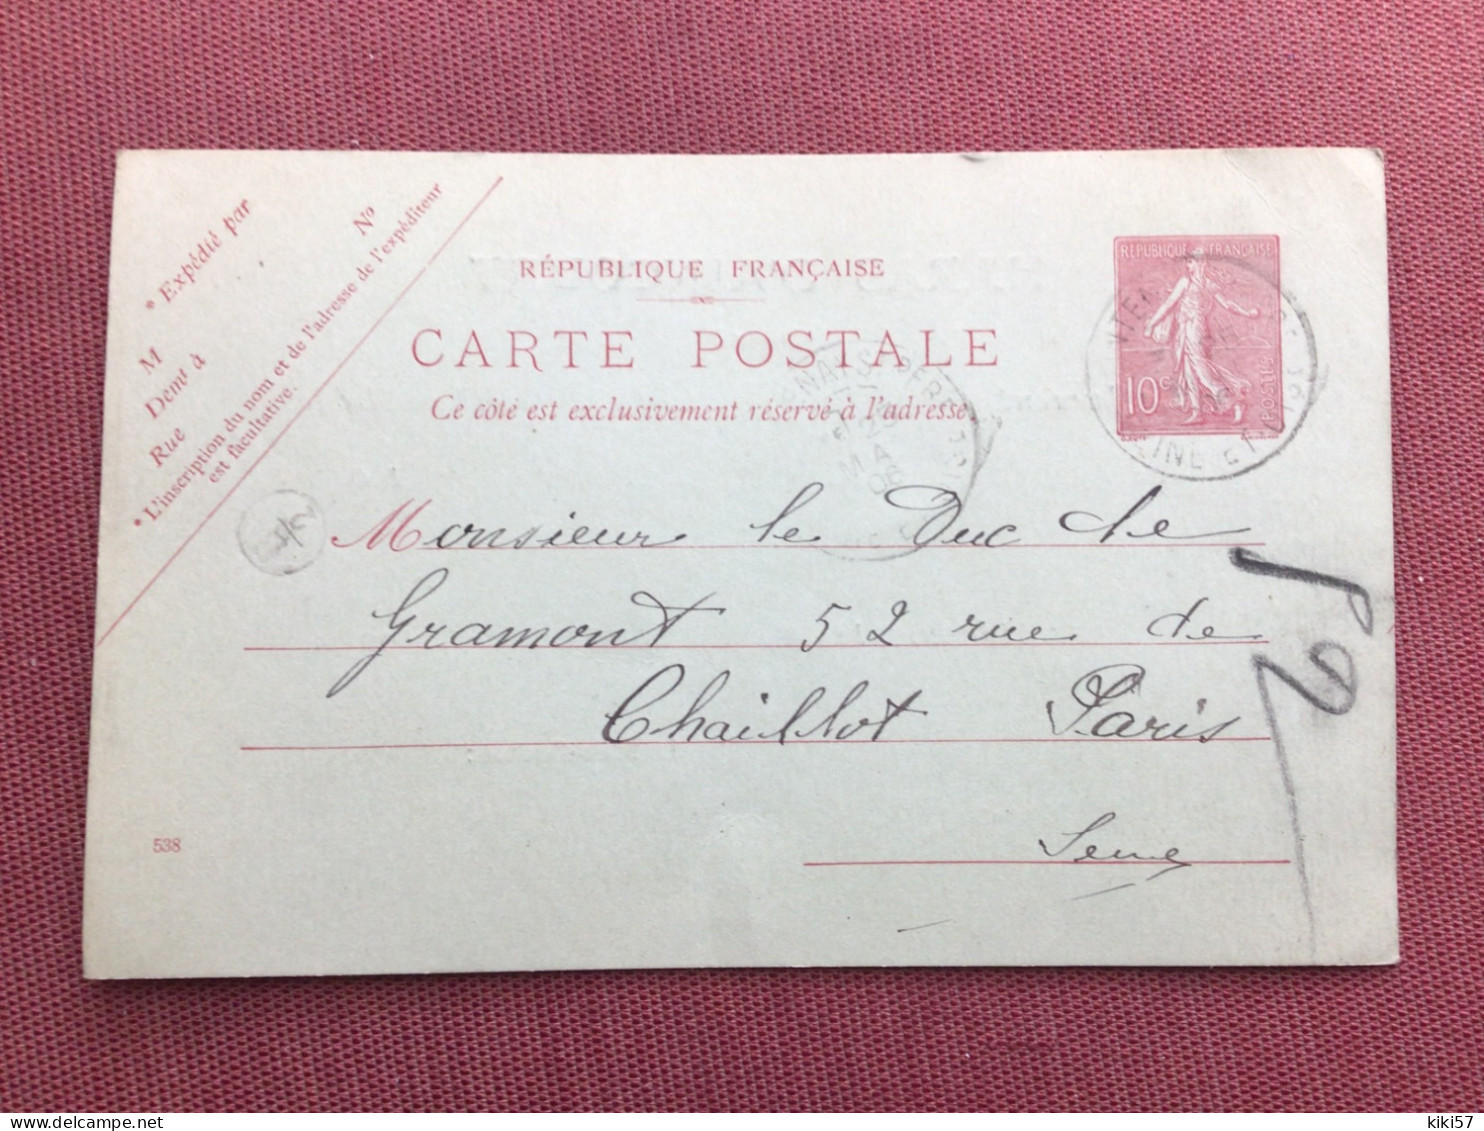 FRANCE Carte Du Haras D’AINCOURT Pour Le Duc De GRAMONT 1906 - Lettres & Documents